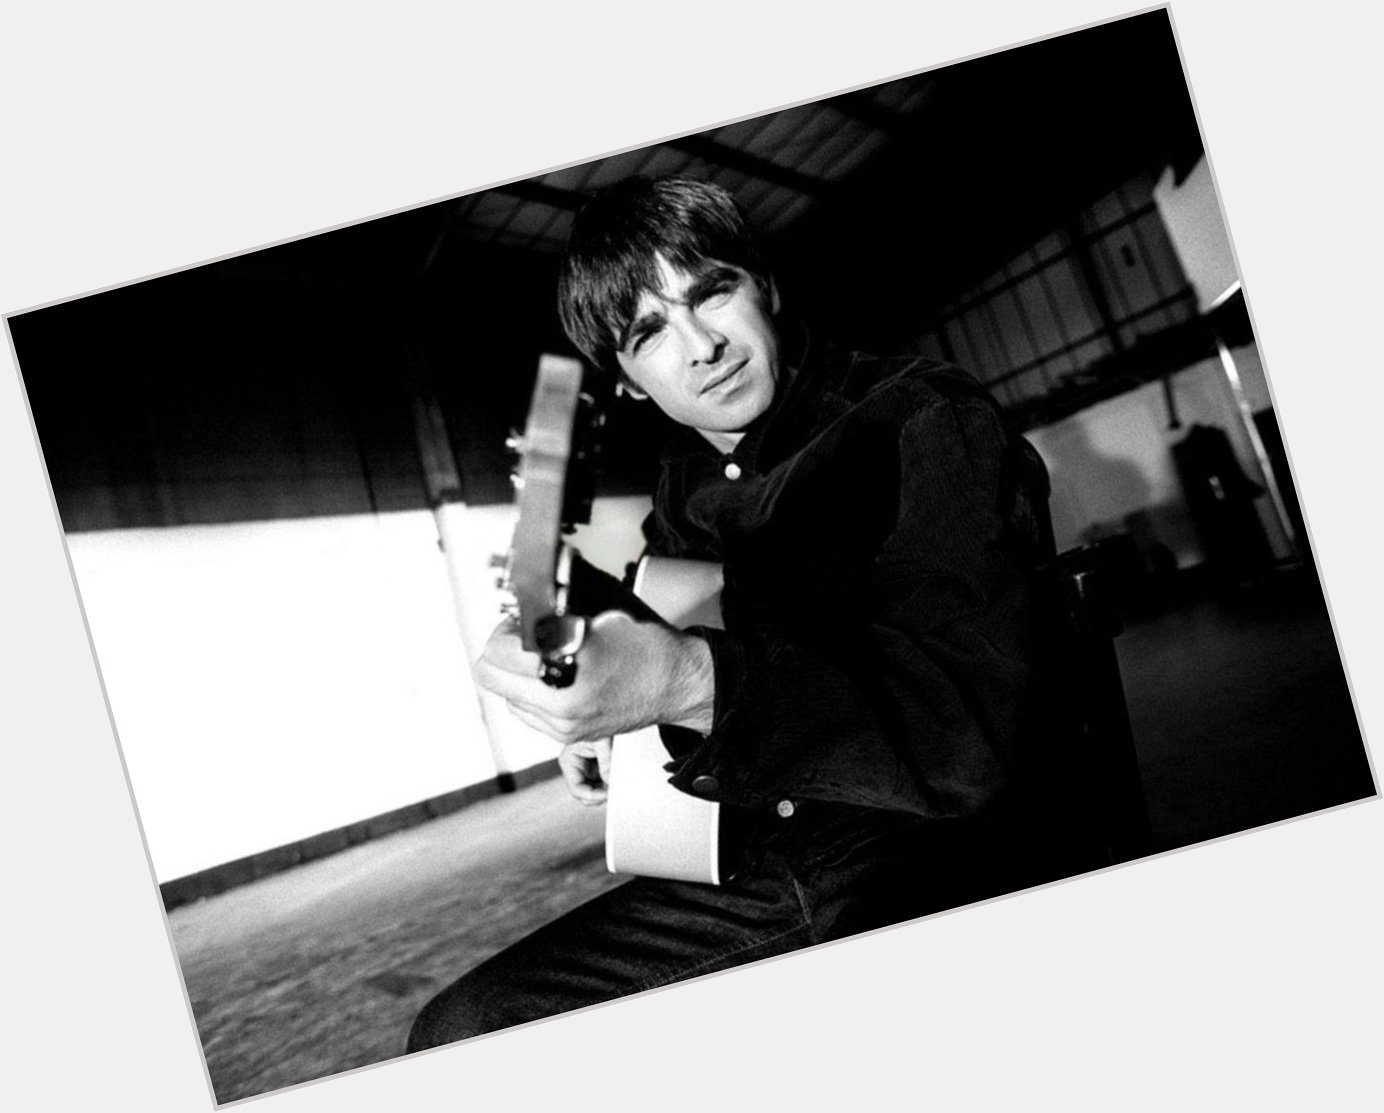 Happy 50th Birthday Noel Gallagher. Legend x 